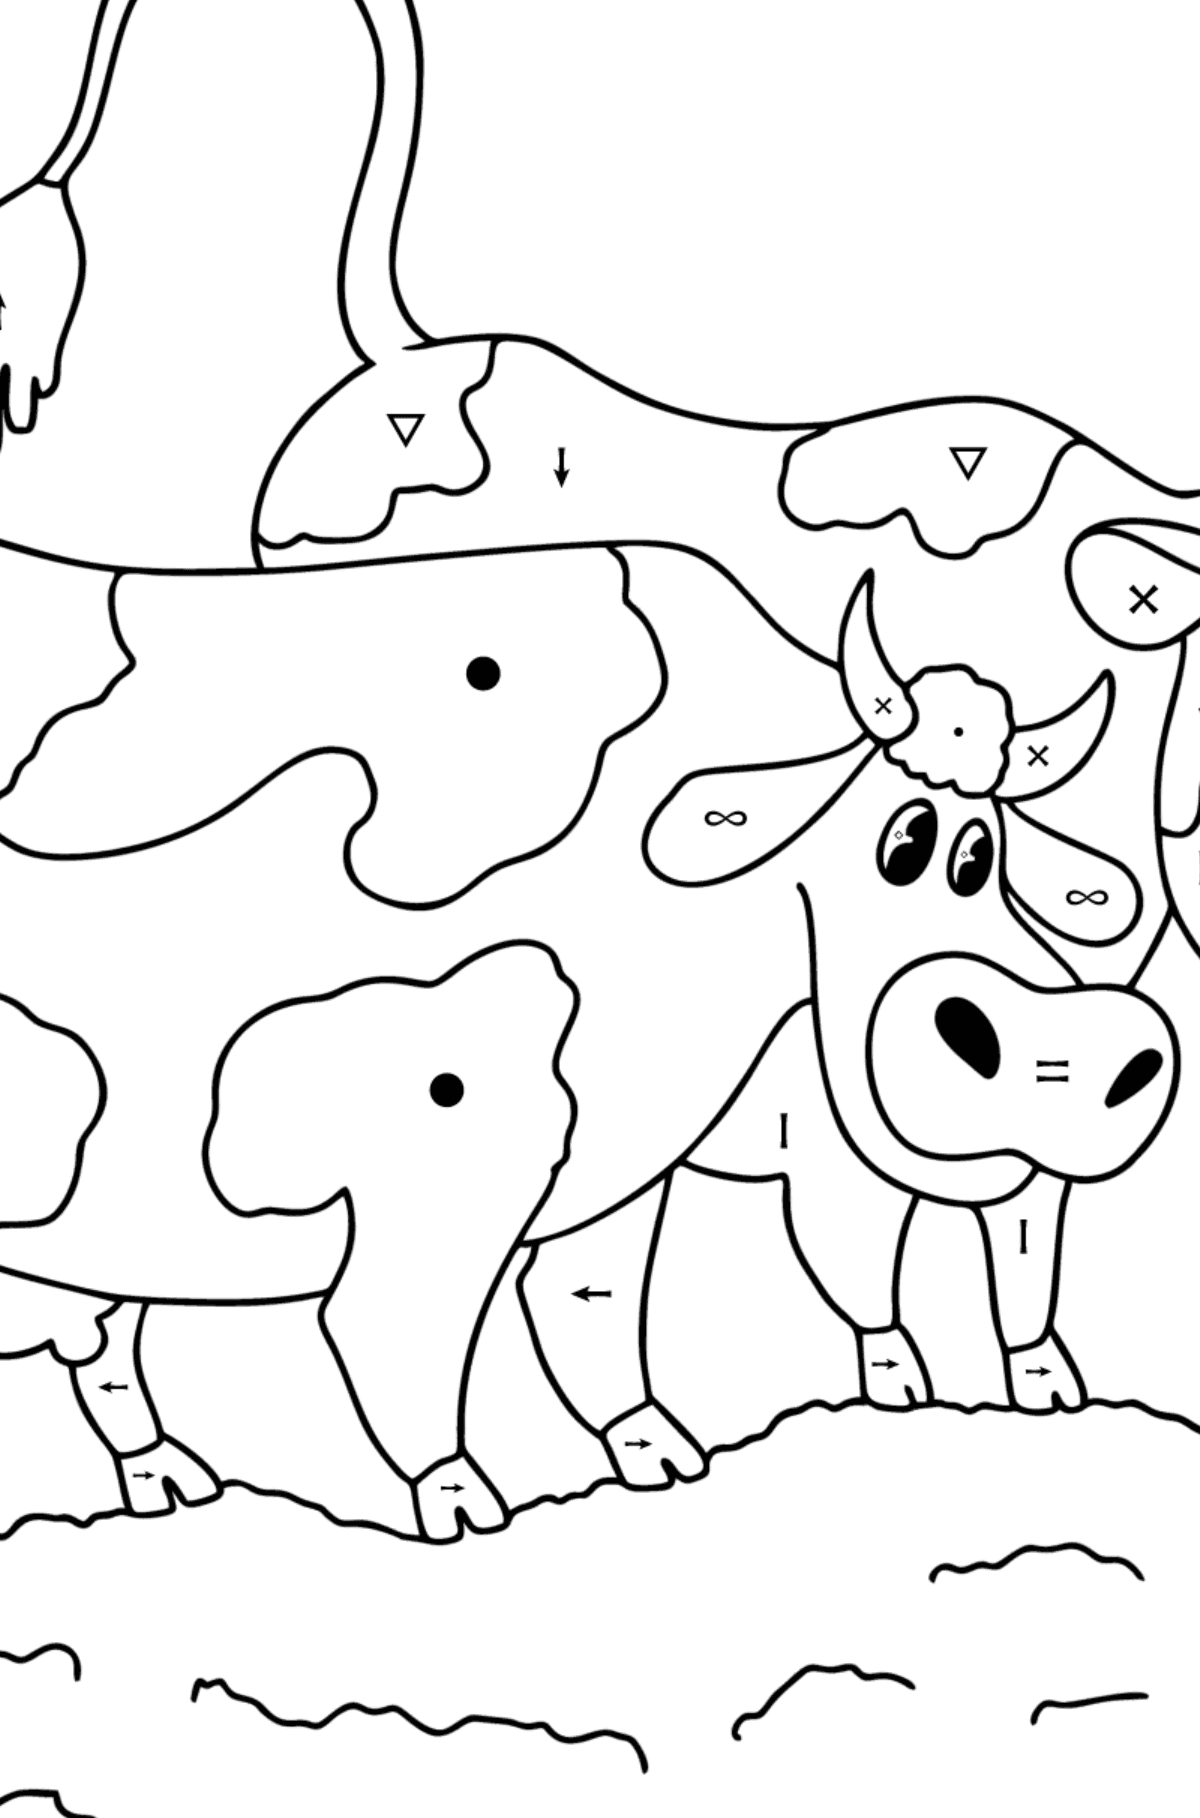 Dibujo de vacas para colorear - Colorear por Símbolos para Niños